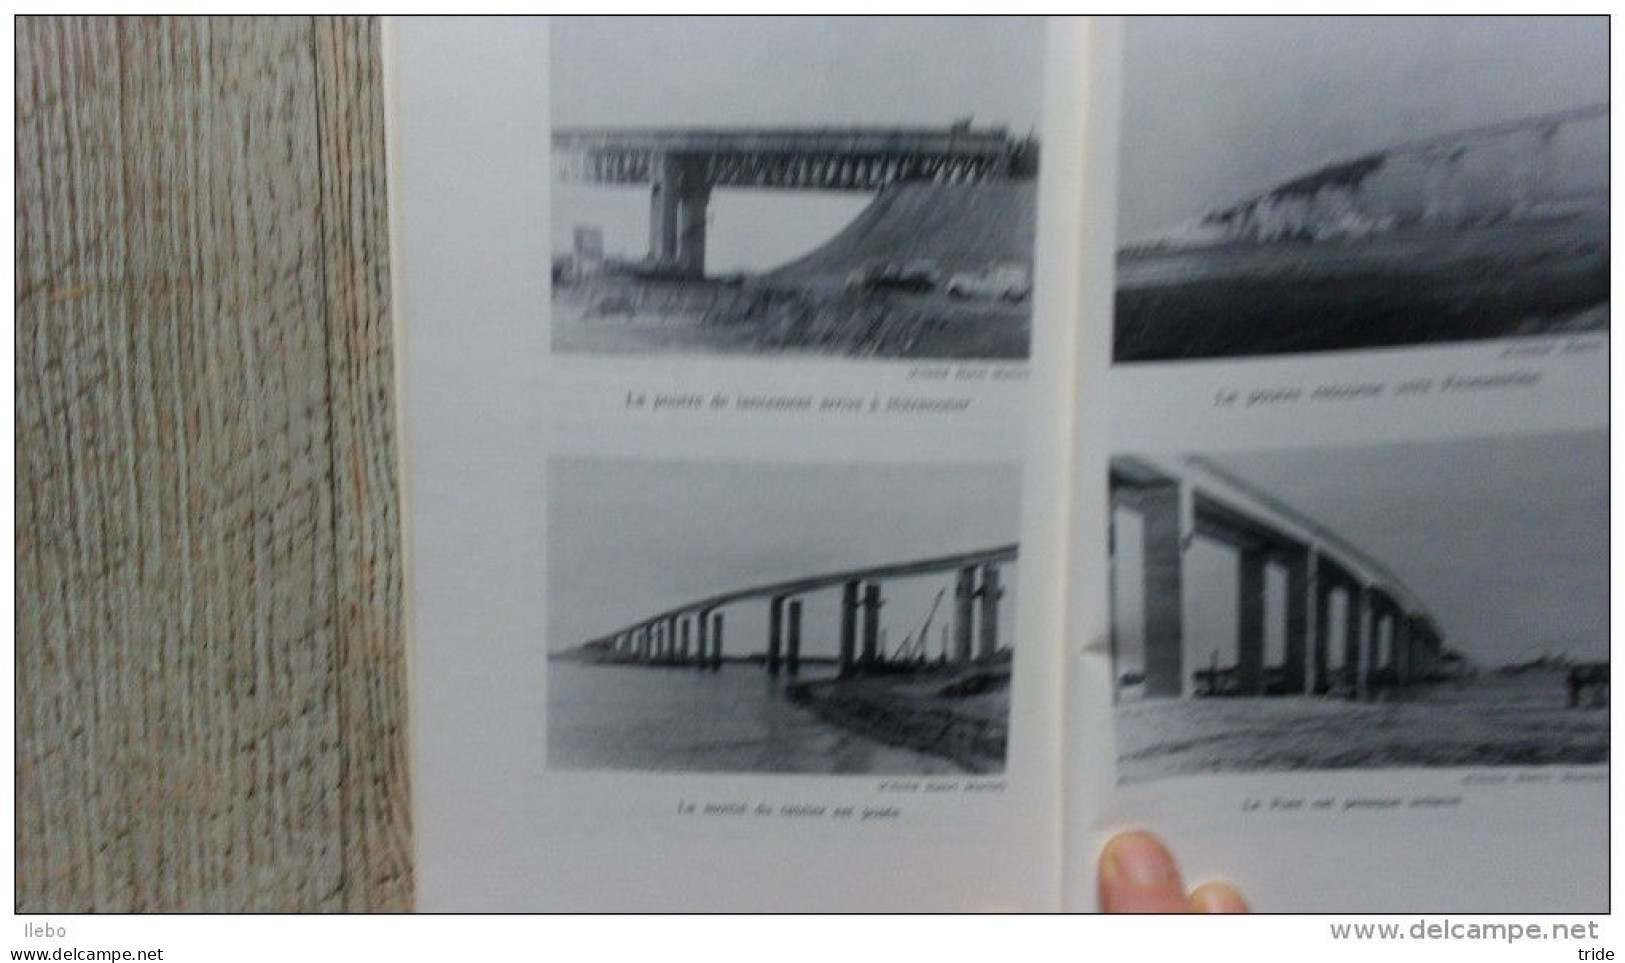 L'histoire Du Gois Le Pont De Noirmoutier Par Henri Martin 1971 Illustré Rare - Tourism Brochures